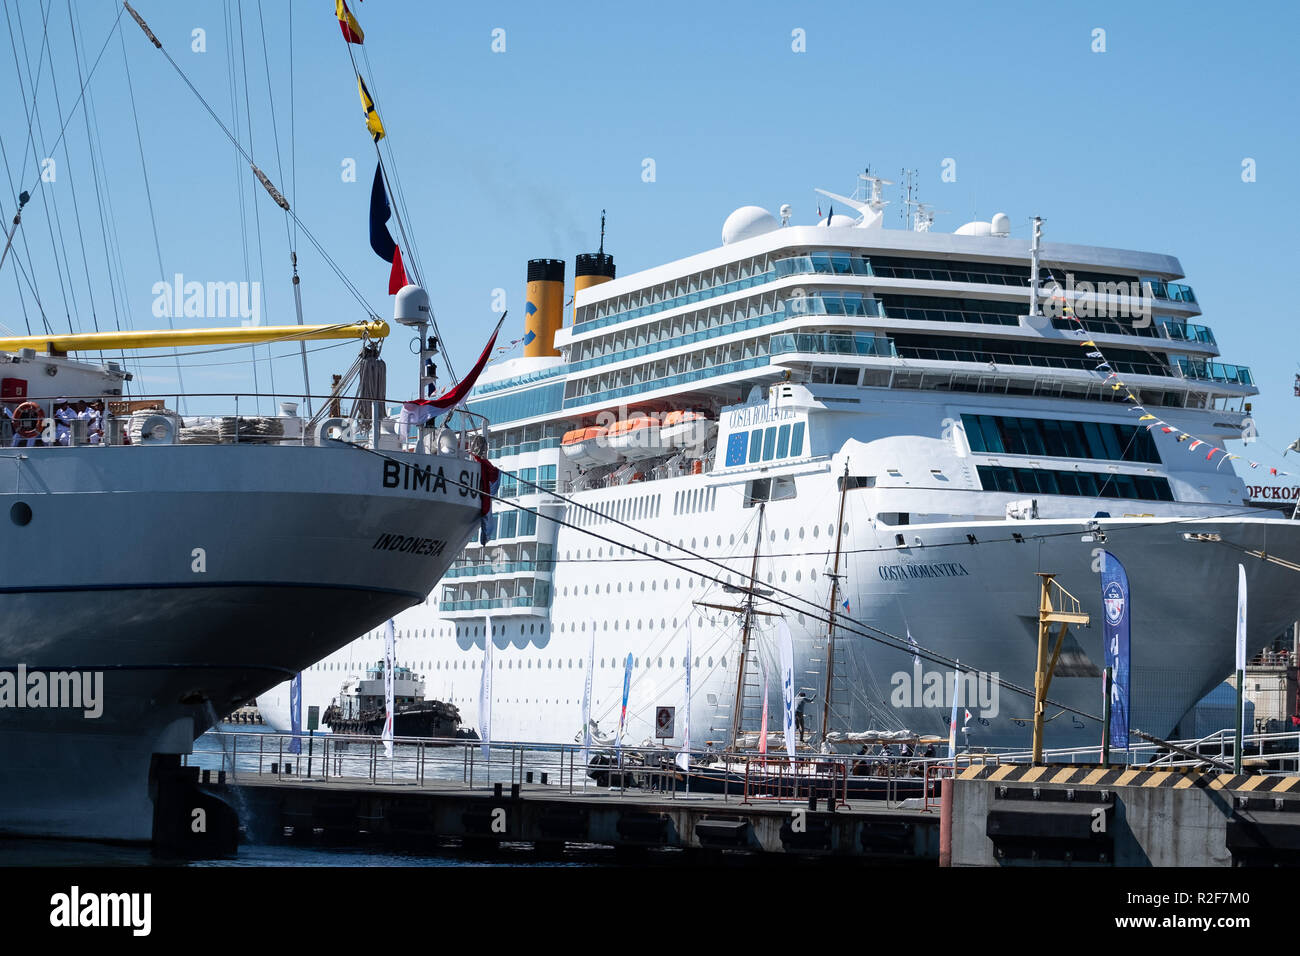 Wladiwostok, Russland - 9. September 2018: Ocean Liner Costa Romantica und Segelschiff Bima Suci im Hafen von Wladiwostok. Stockfoto